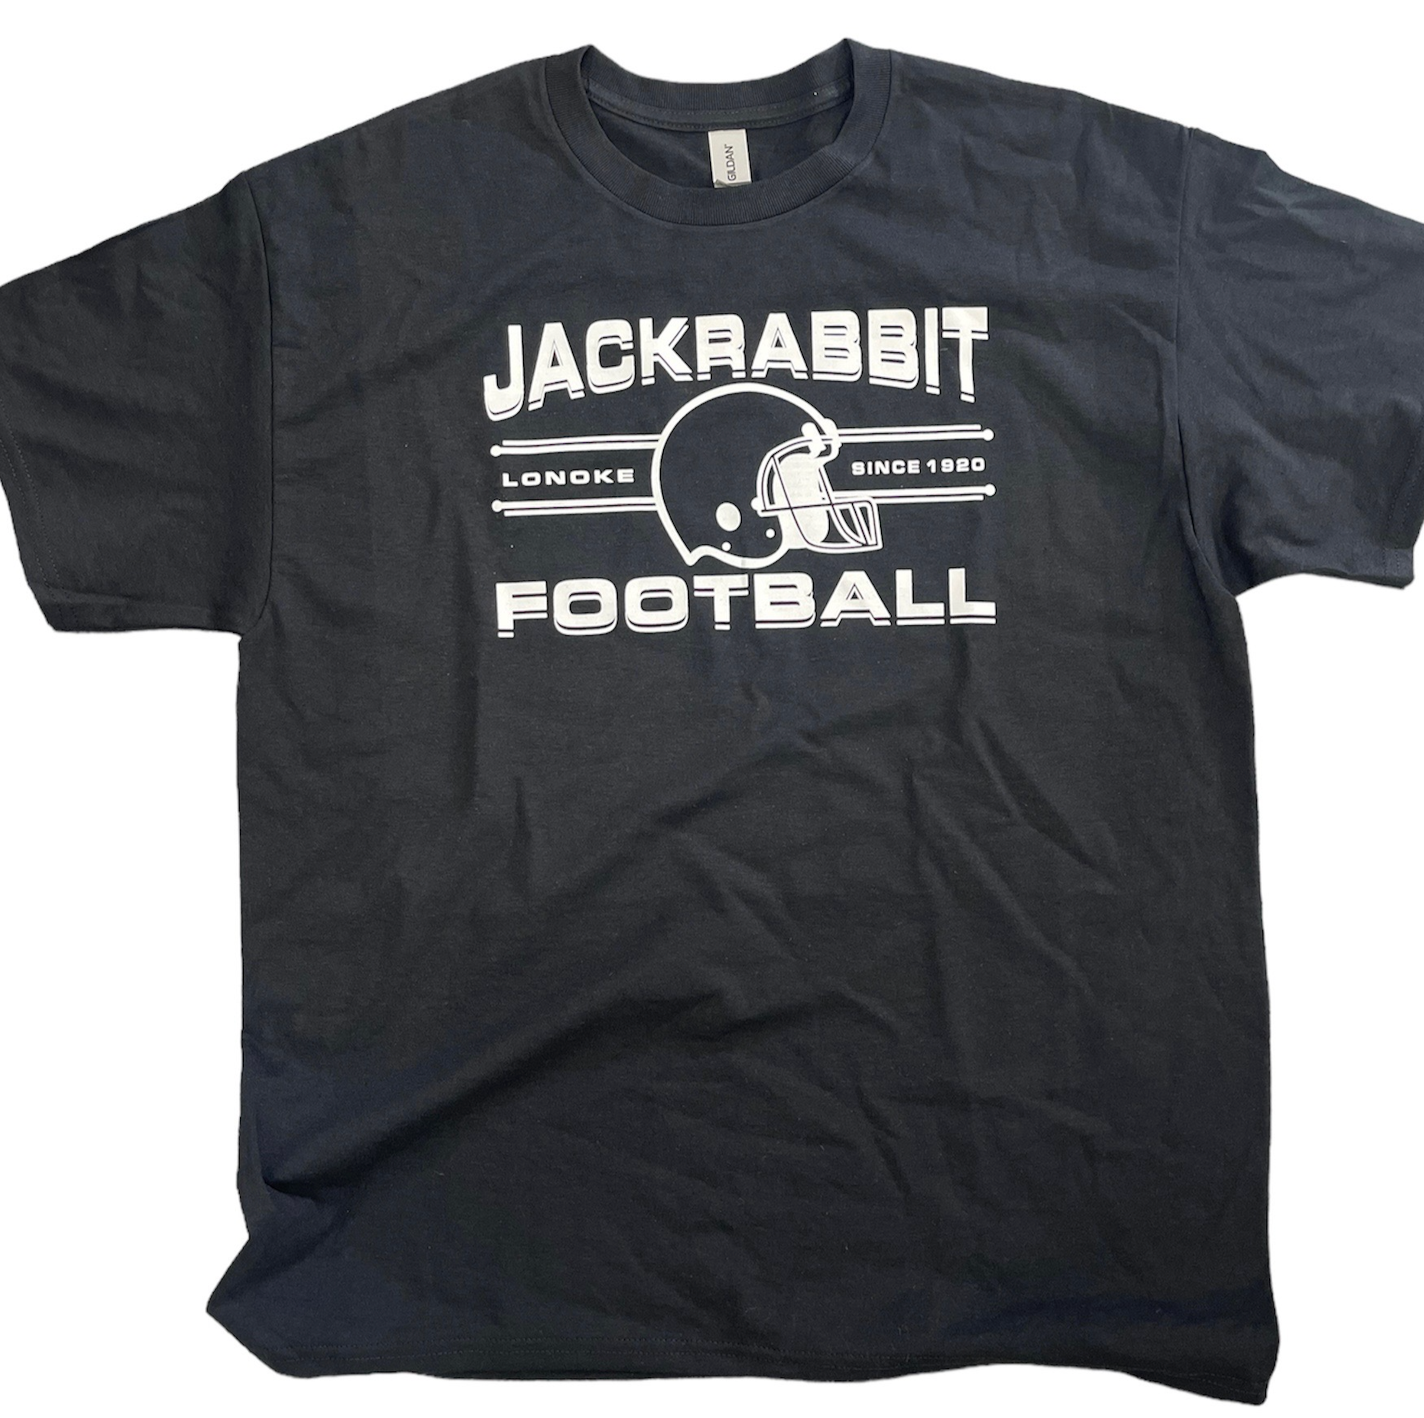 Jackrabbit Football- T-shirt